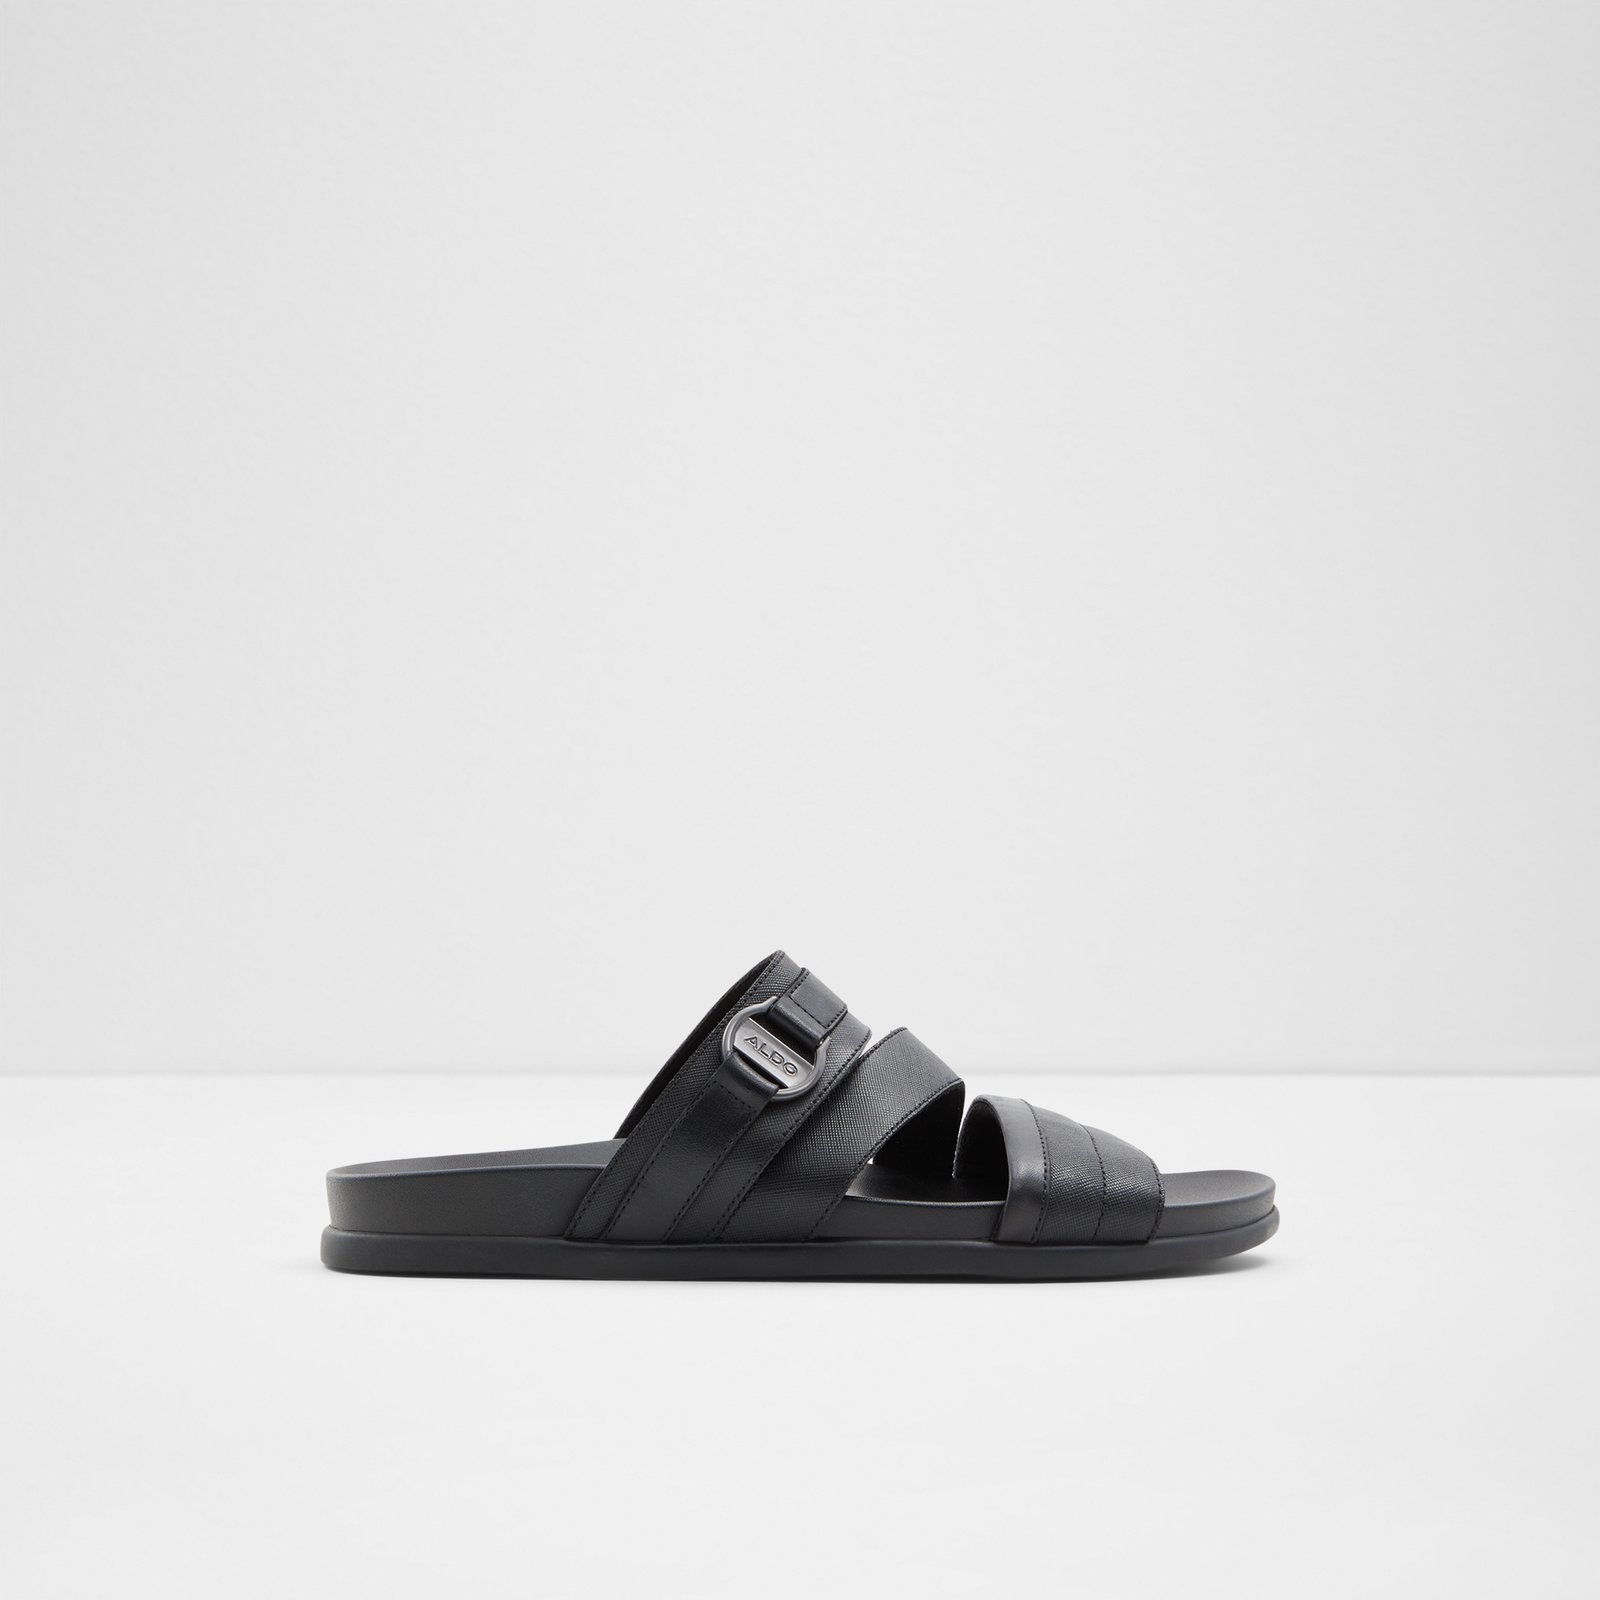 ALDO Slip On Sandals for Men | Mercari